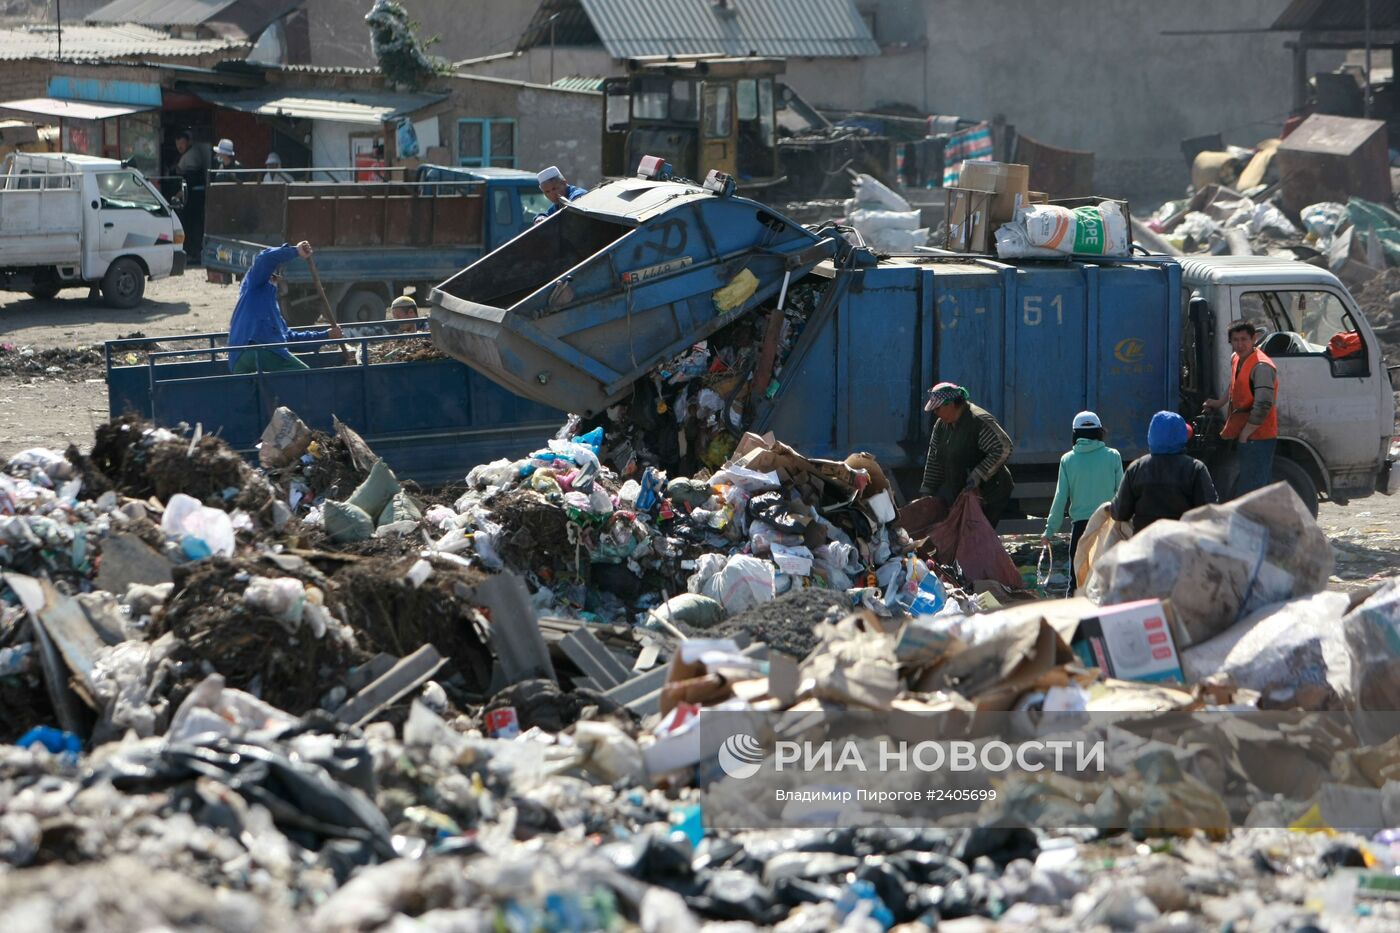 Акция уличного театра на городской свалке с целью привлечь внимание к проблеме мусорного полигона в Бишкеке